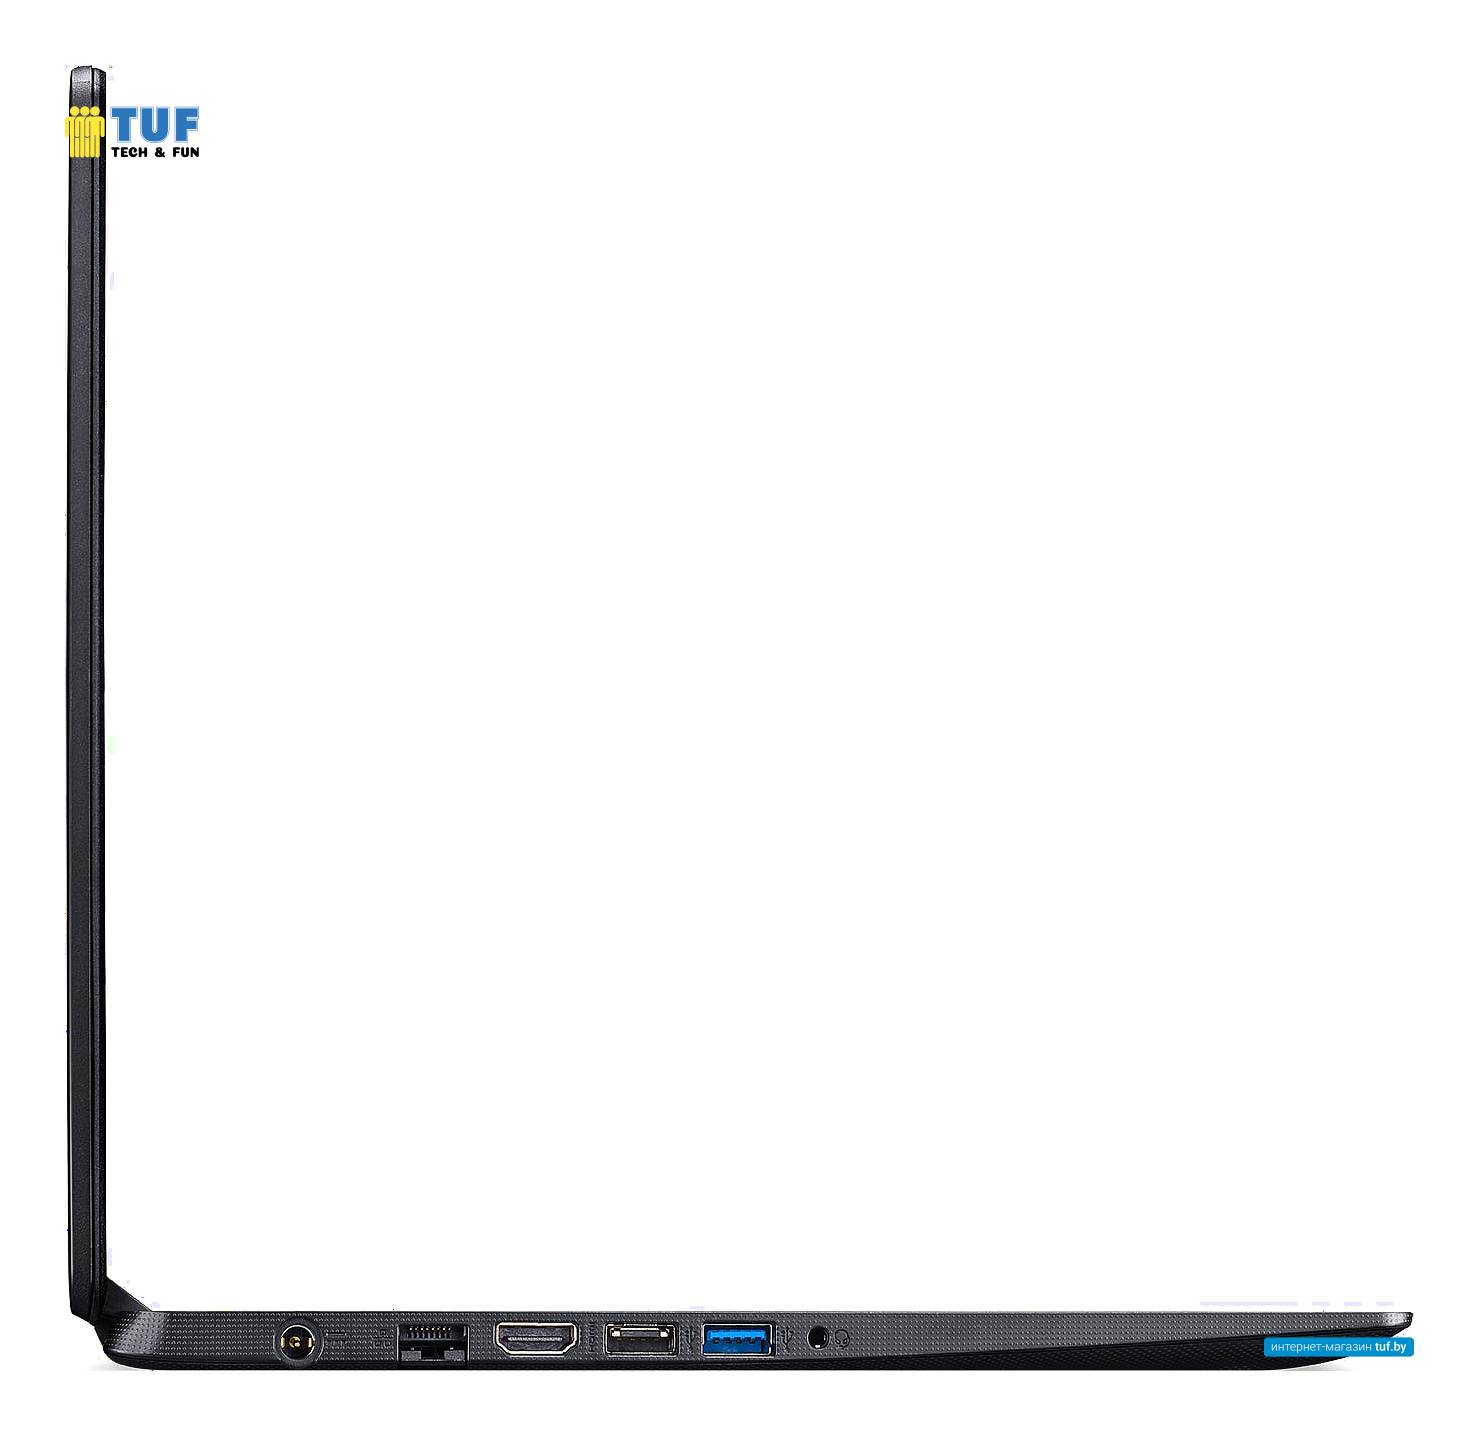 Ноутбук Acer Aspire 3 A315-56-513B NX.HS5ER.025